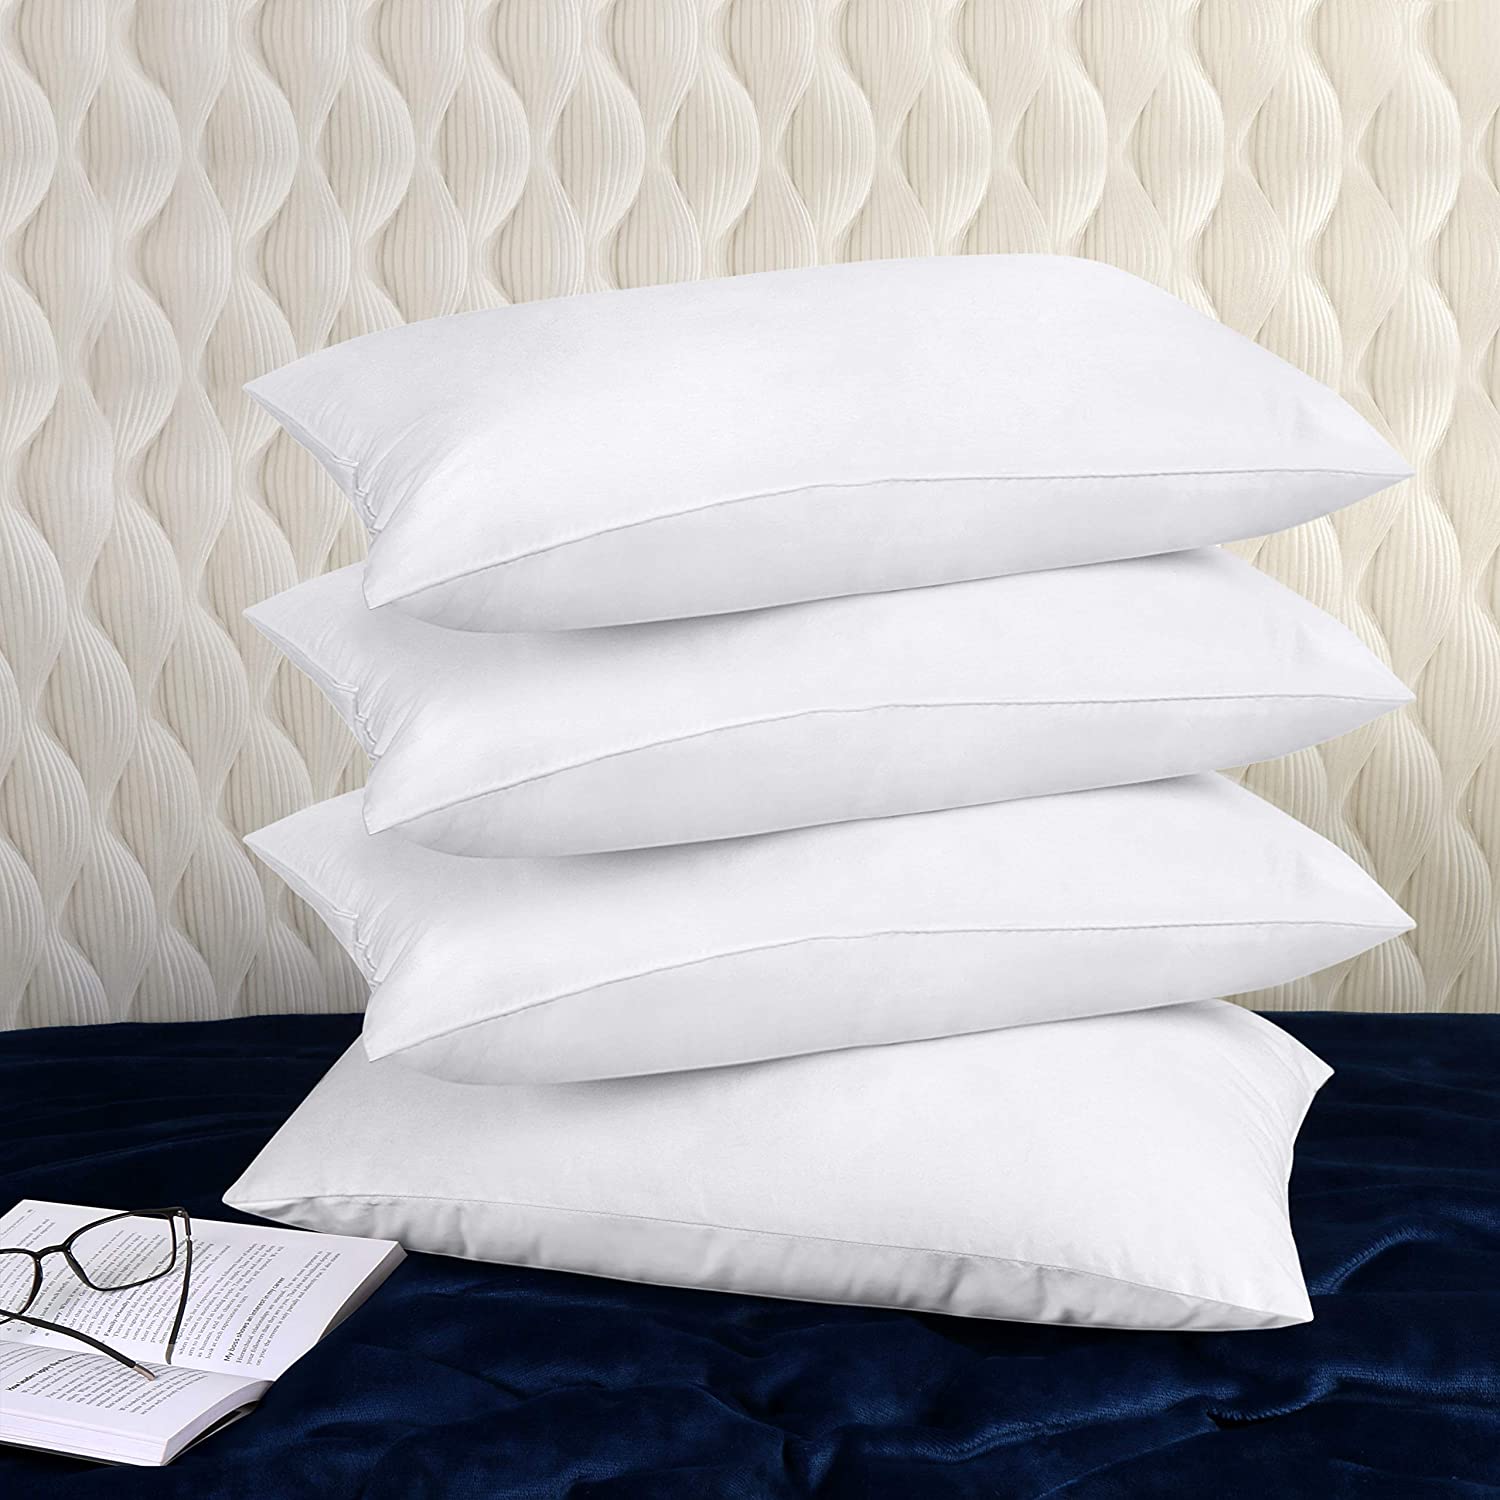 Utopia Bedding Throw Pillows (Set of 4, White), 16 x 16 Inches